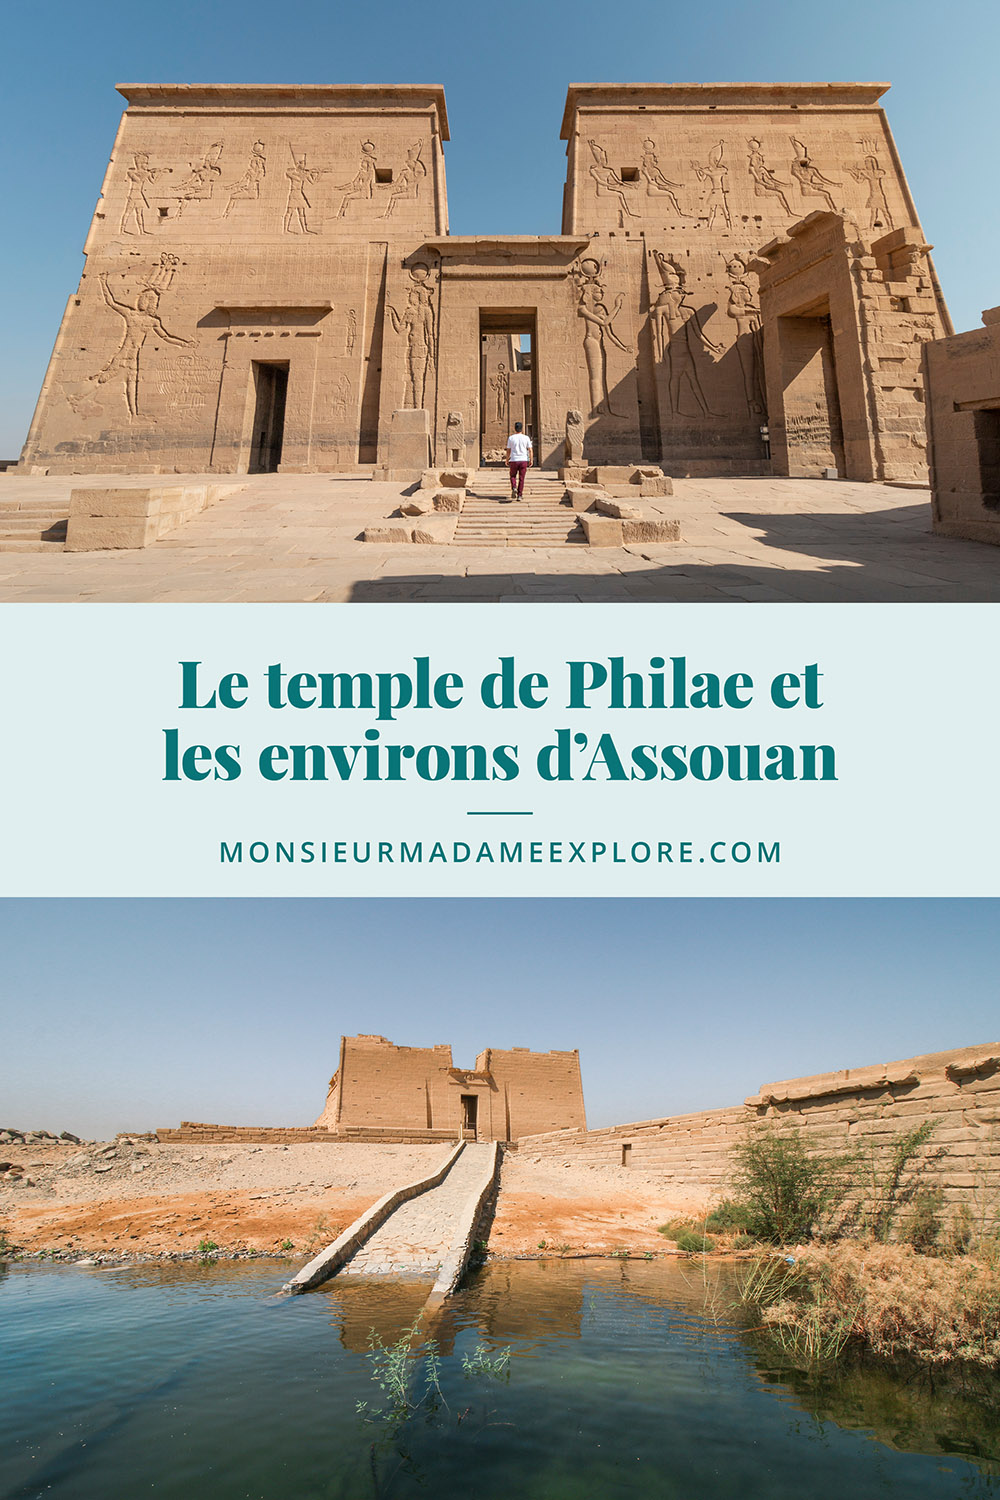 Visiter le temple de Philae et les environs d'Assouan, Monsieur+Madame Explore, Blogue de voyage, Égypte / Visiting Philae temple, Egypt